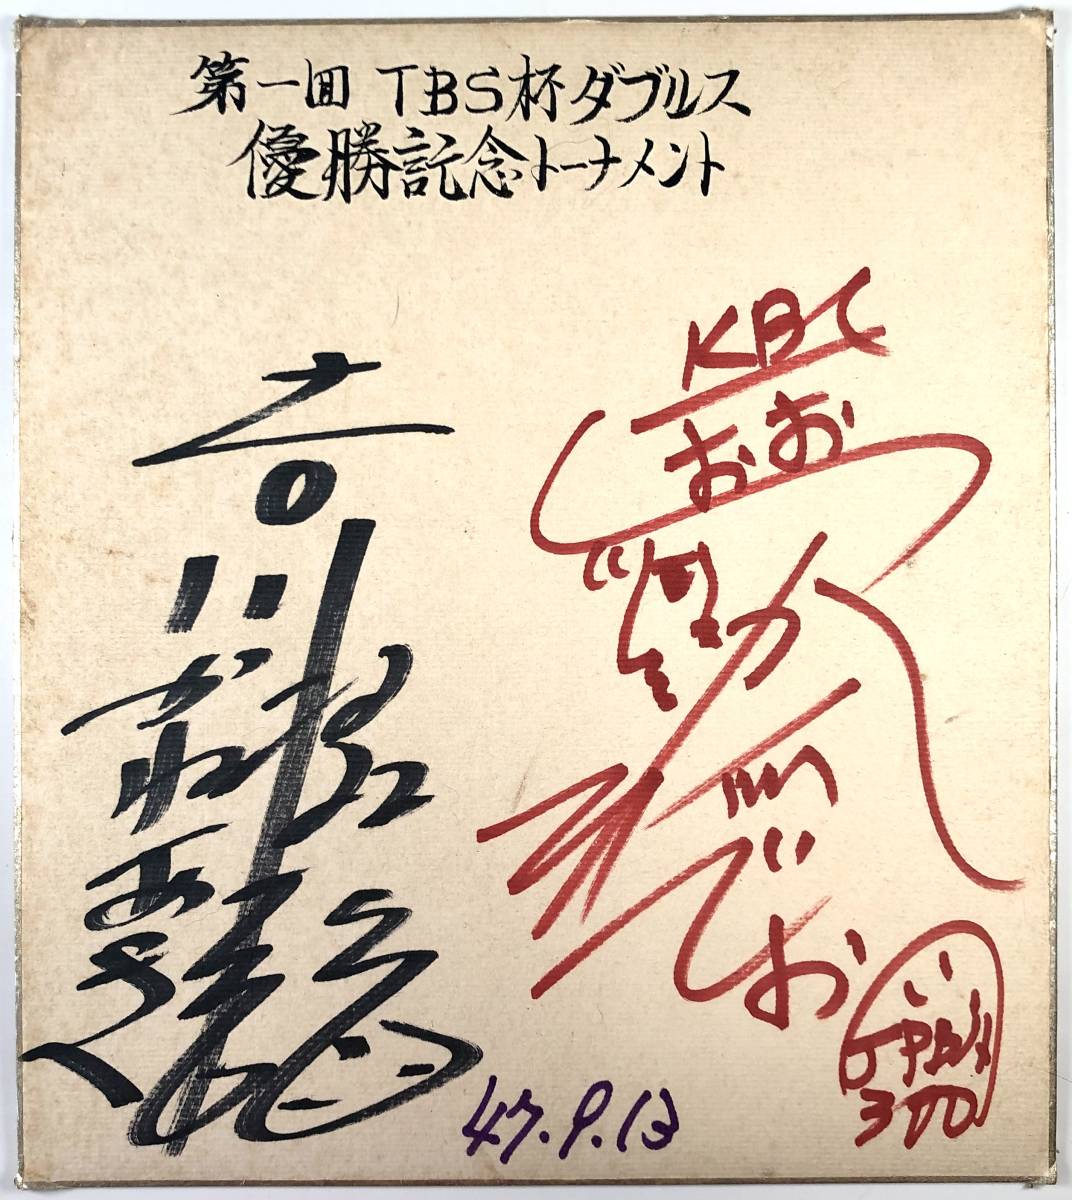 पहला टीबीएस कप डबल्स चैम्पियनशिप टूर्नामेंट हिदेओ ओत्सुका और कानेकी योशिकावा हस्ताक्षरित रंगीन कागज (बॉलिंग/केबीसी/जेपीबीए/13 सितंबर), 1972/जंक), खेल द्वारा, बॉलिंग, अन्य